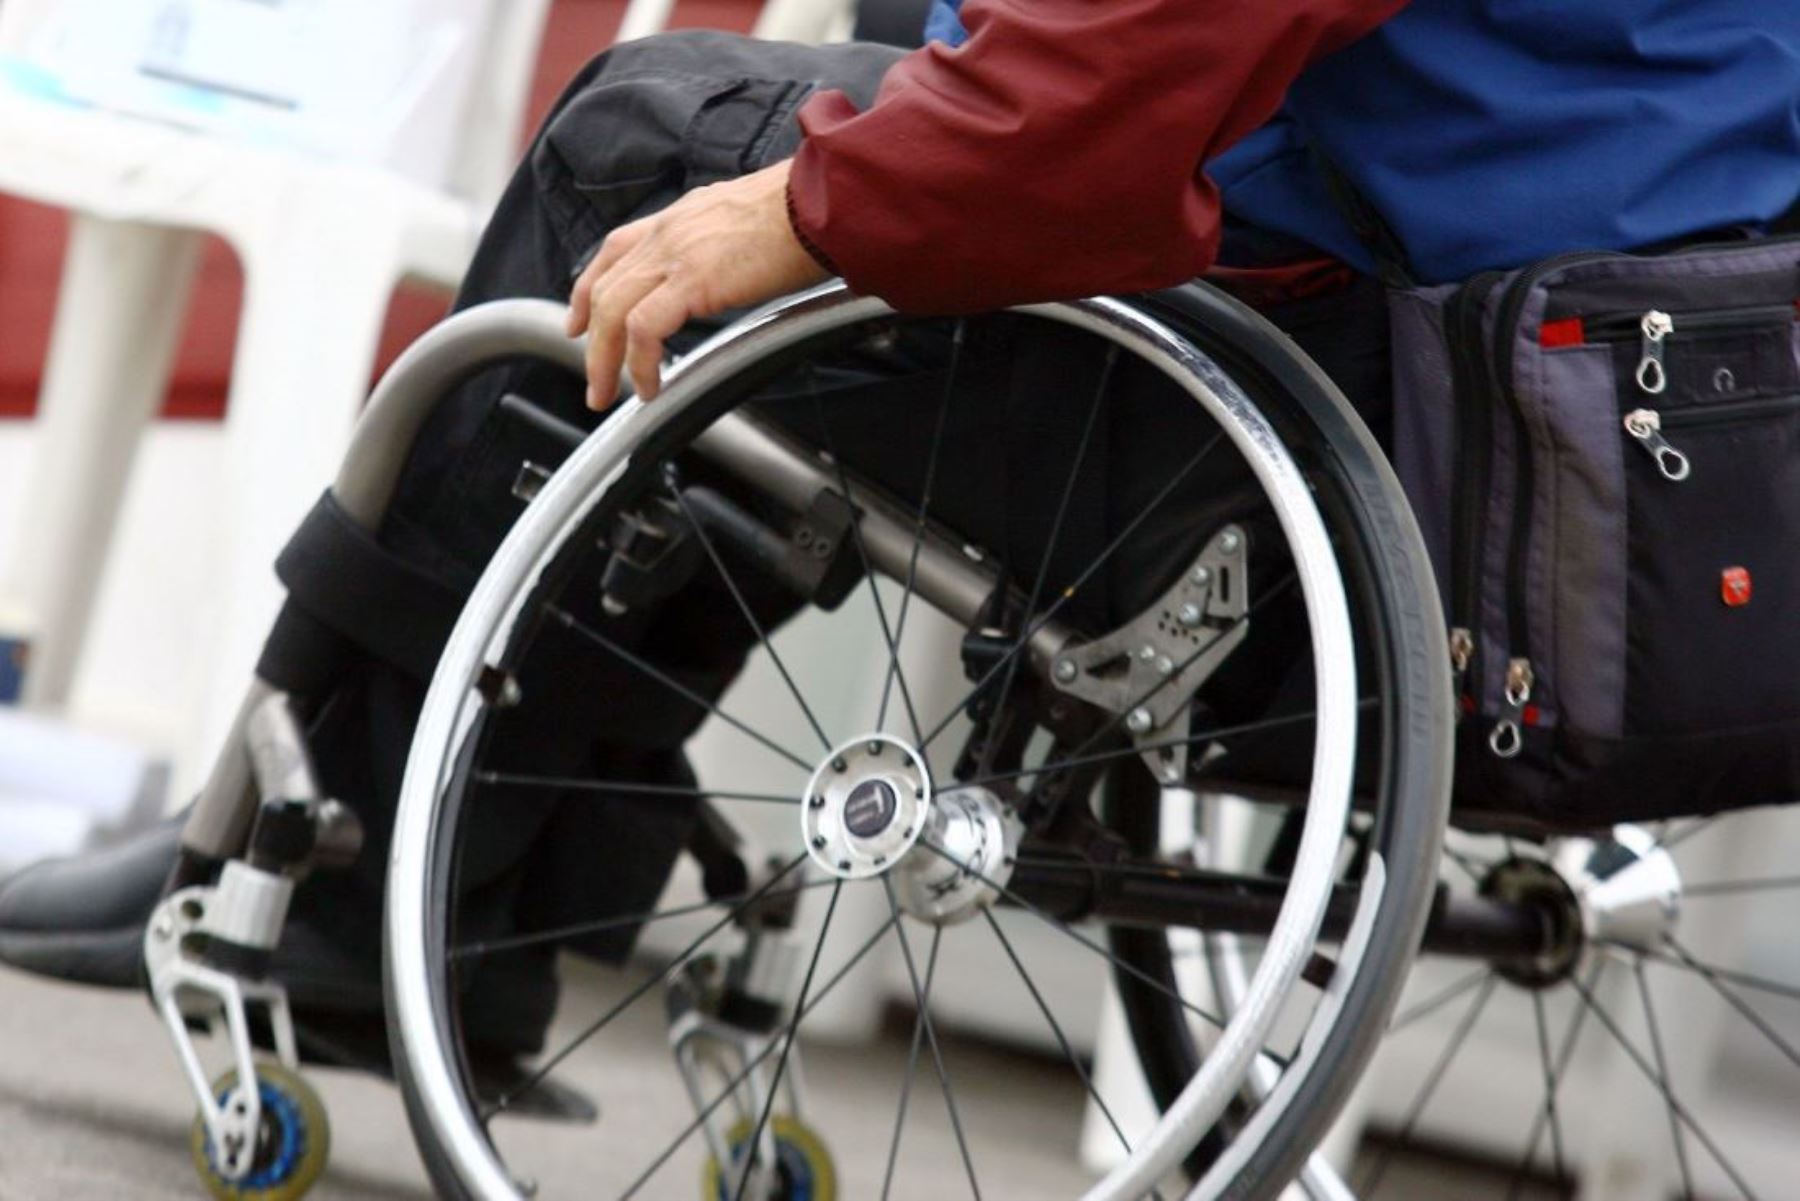 MTC aclara que patinetas y sillas de ruedas eléctricas no requieren de placa ni SOAT. Foto: ANDINA/archivo.